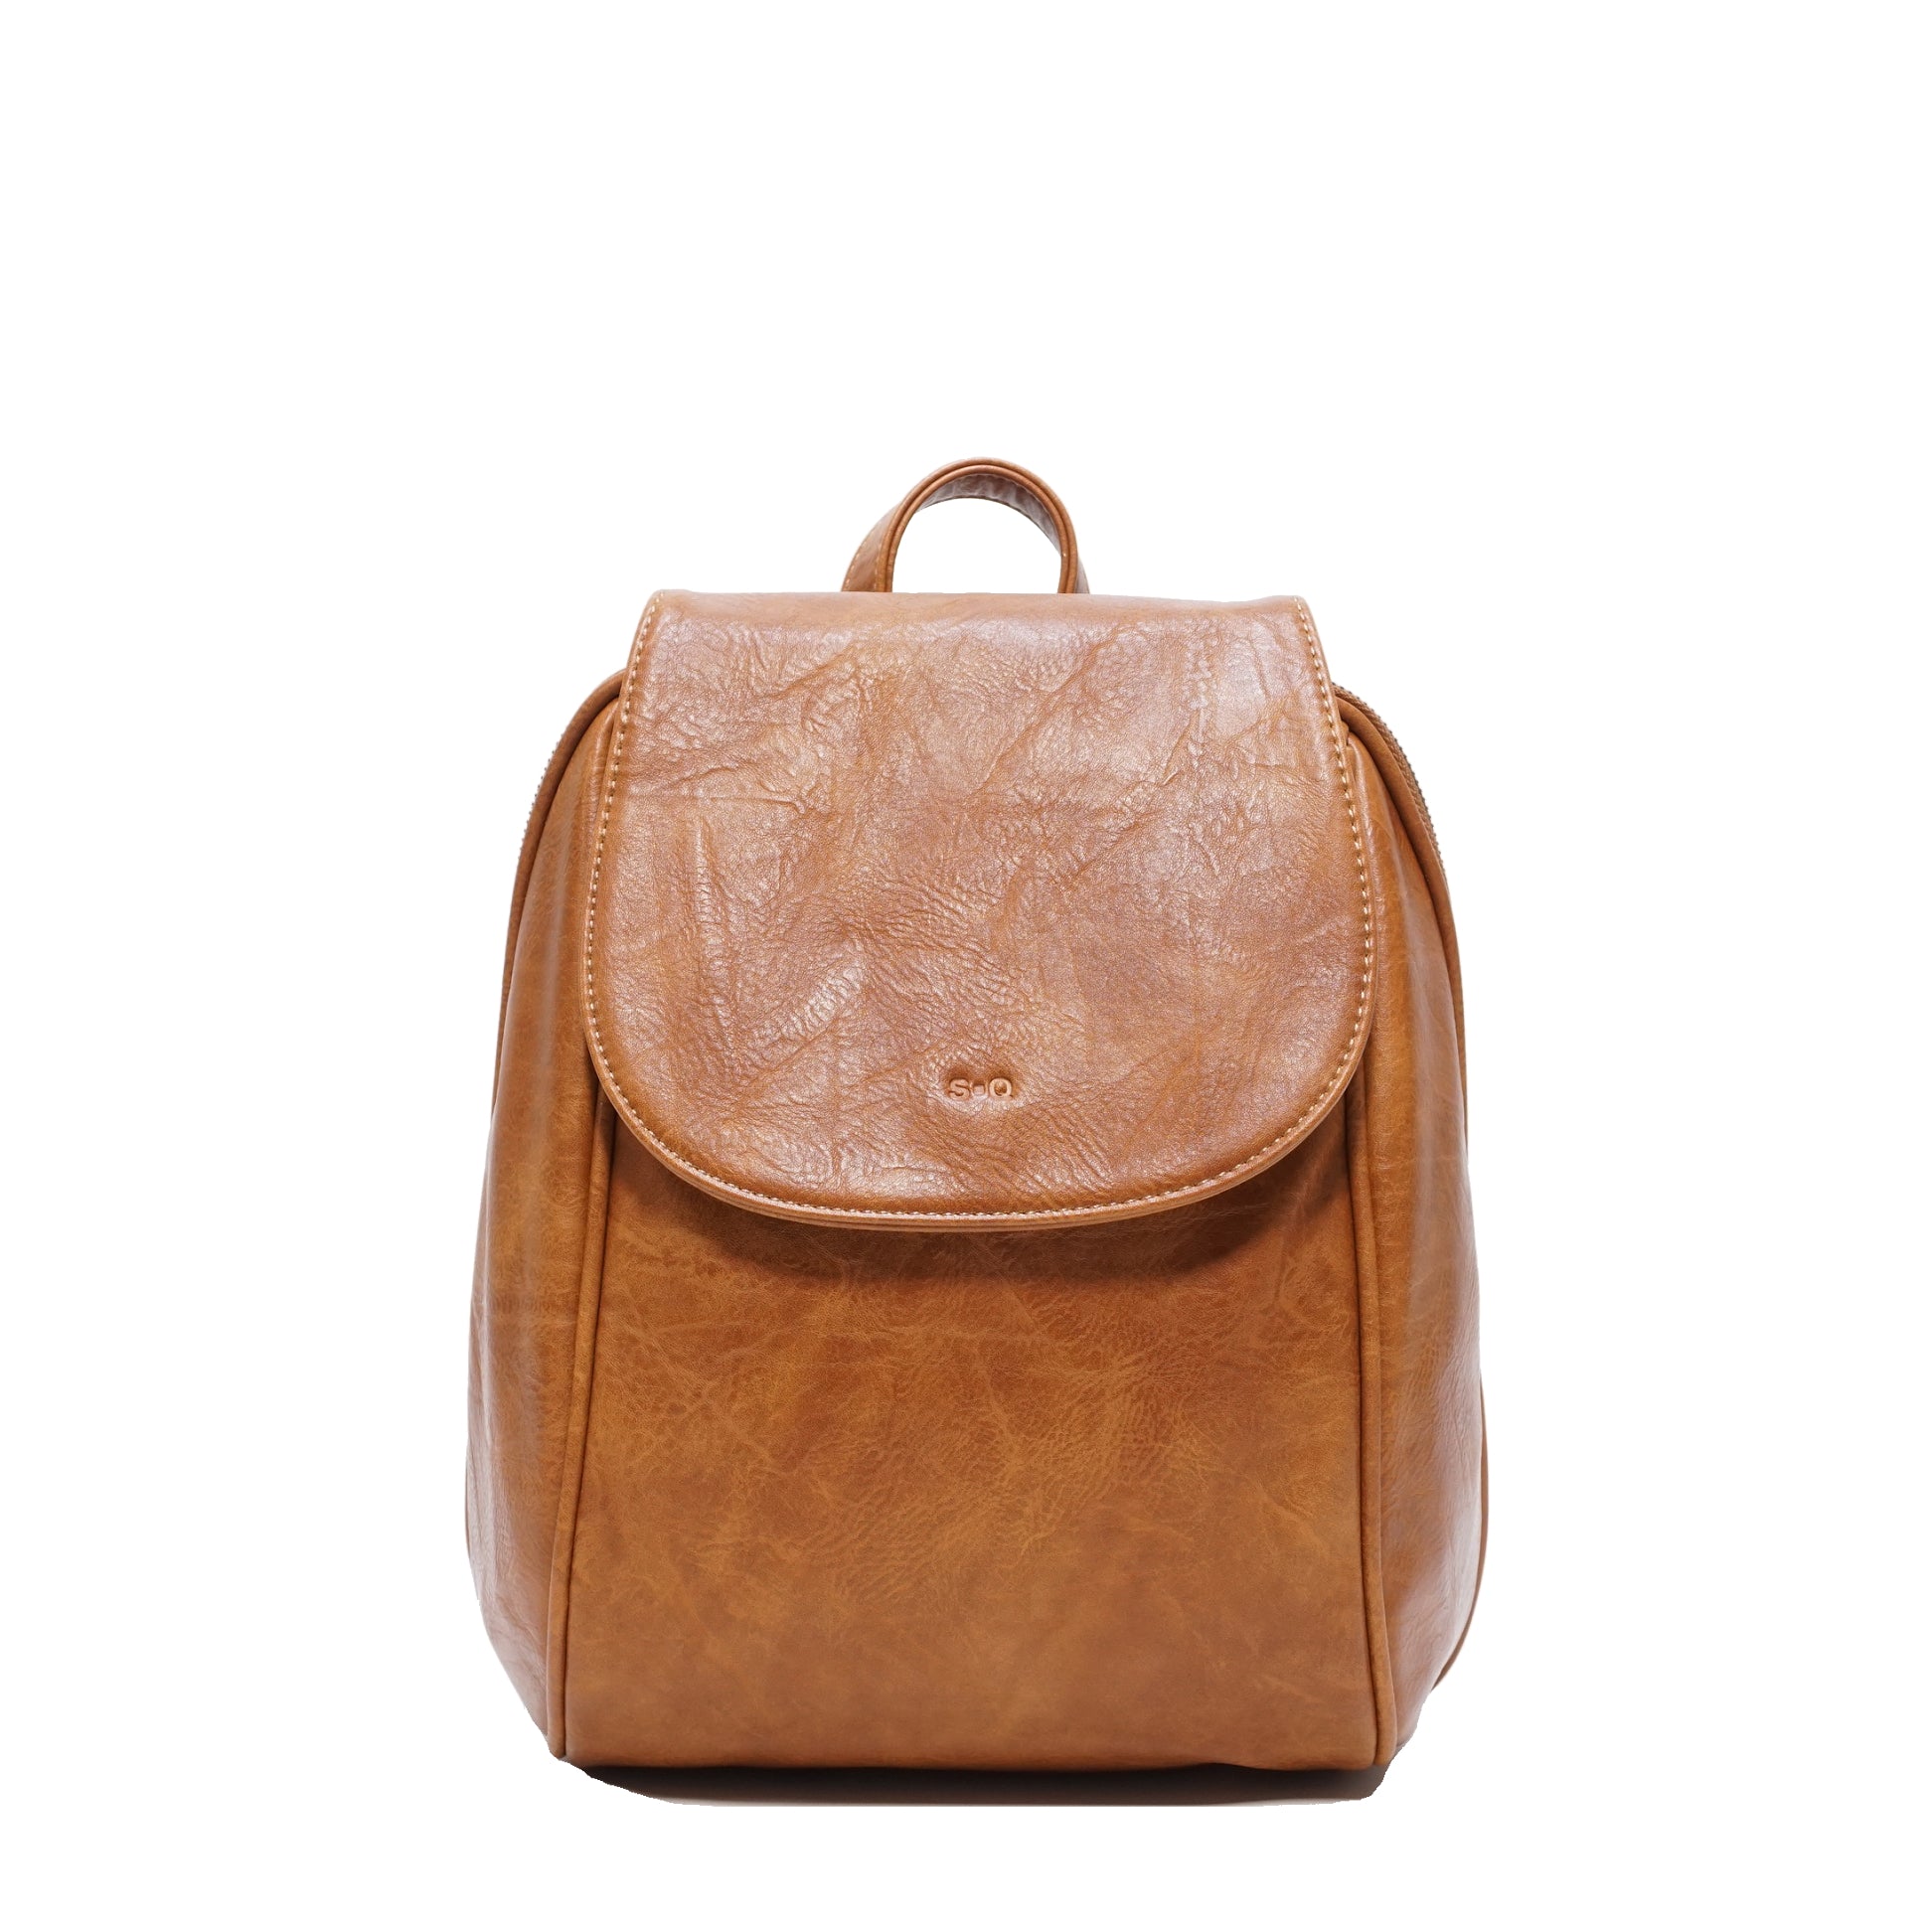 Jada Handbag - Lighten Up Shop